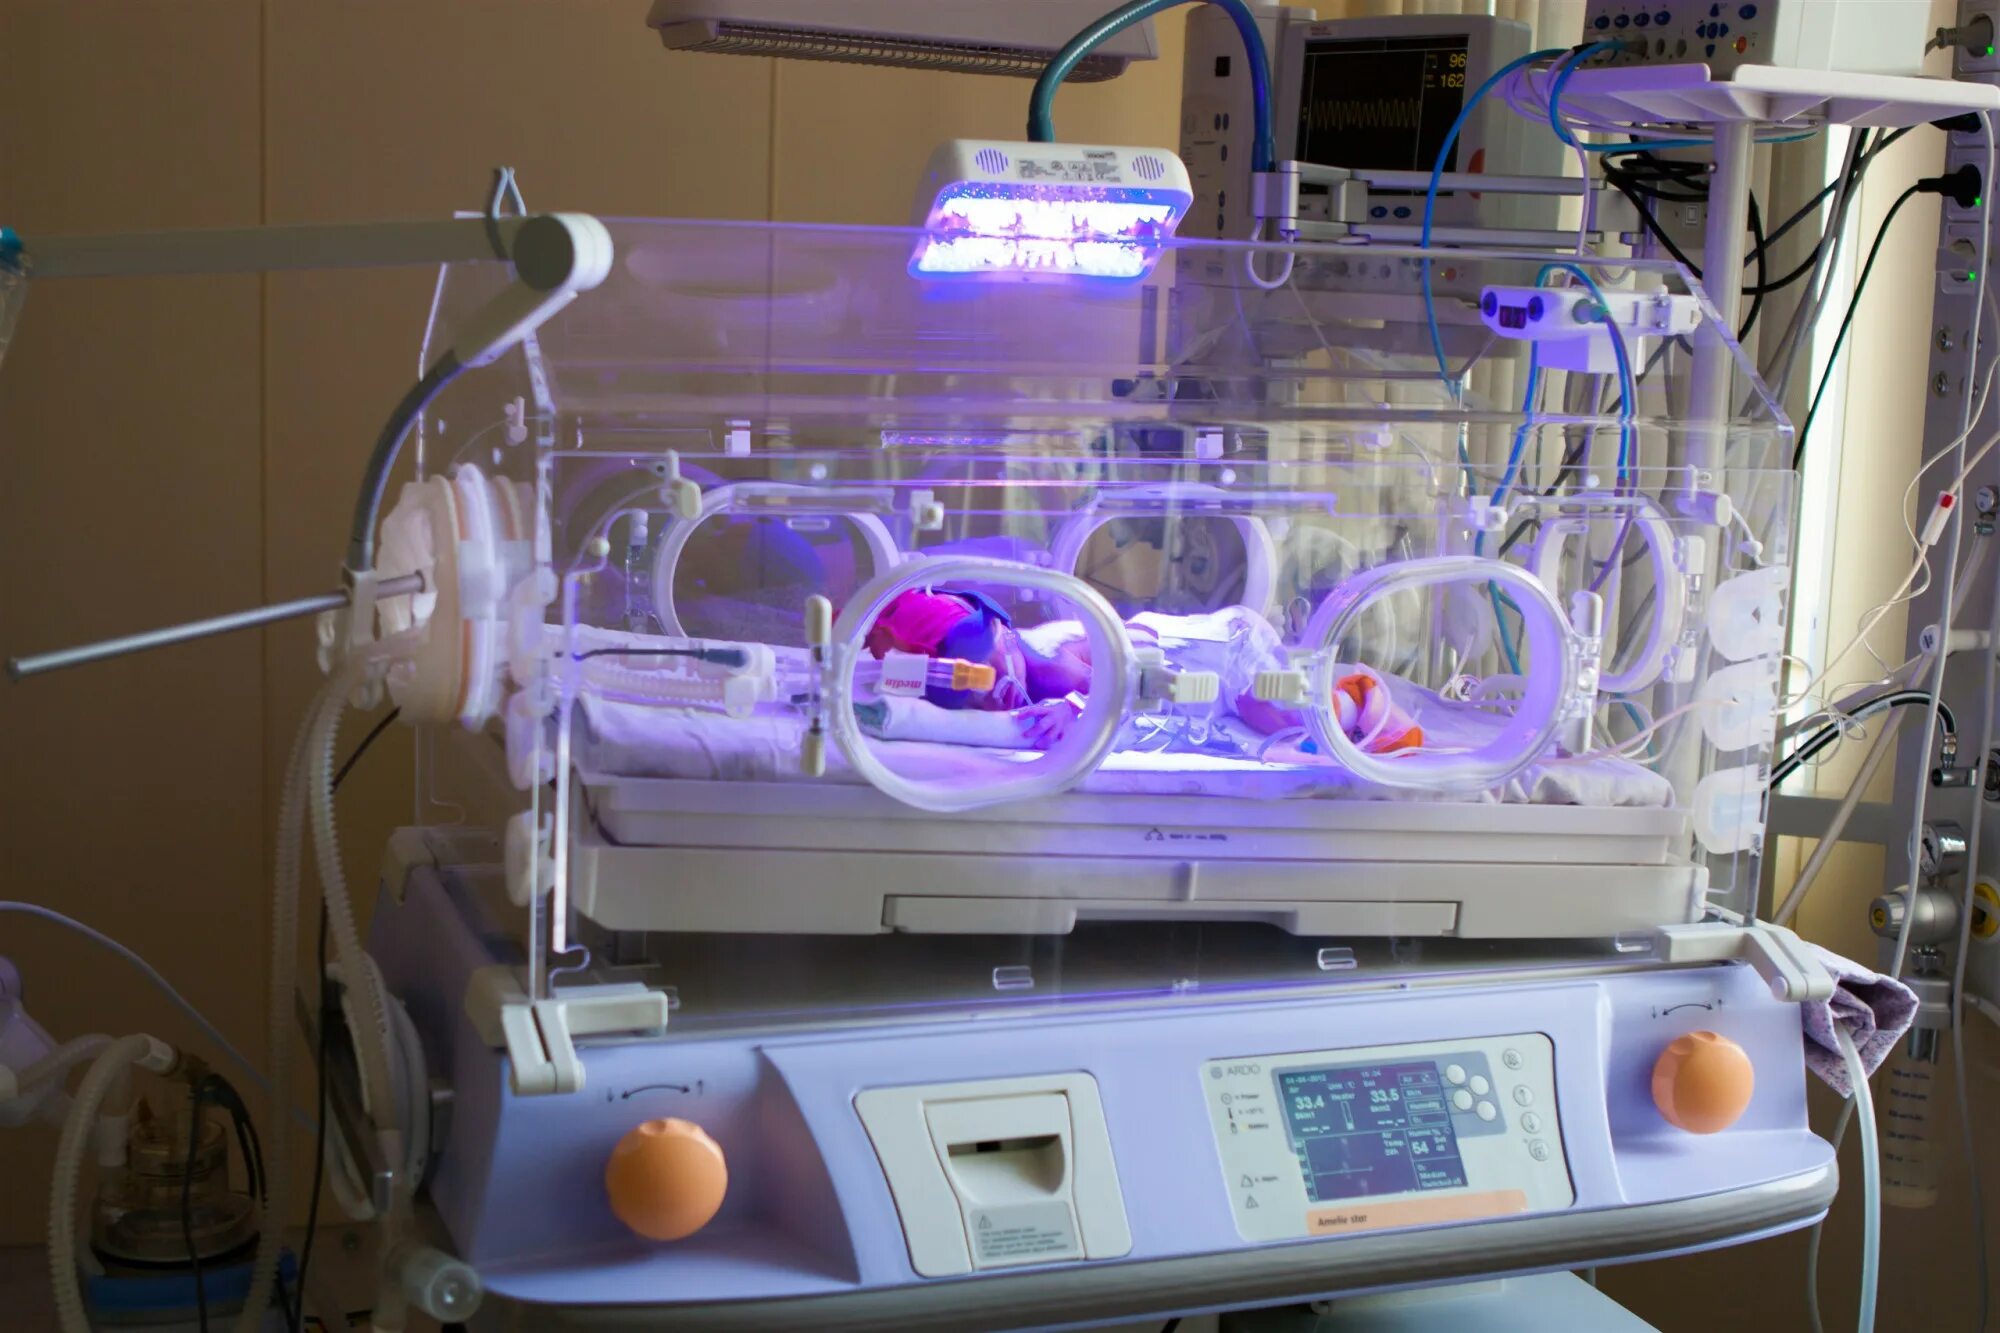 Инкубатор для интенсивной терапии новорожденного BABYGUARD I-1120. Кювез реанимационный для новорожденных. Кювез для новорожденных недоношенных детей. Инкубатор для новорожденных ИДН-02-«данио». 2 этап выхаживания